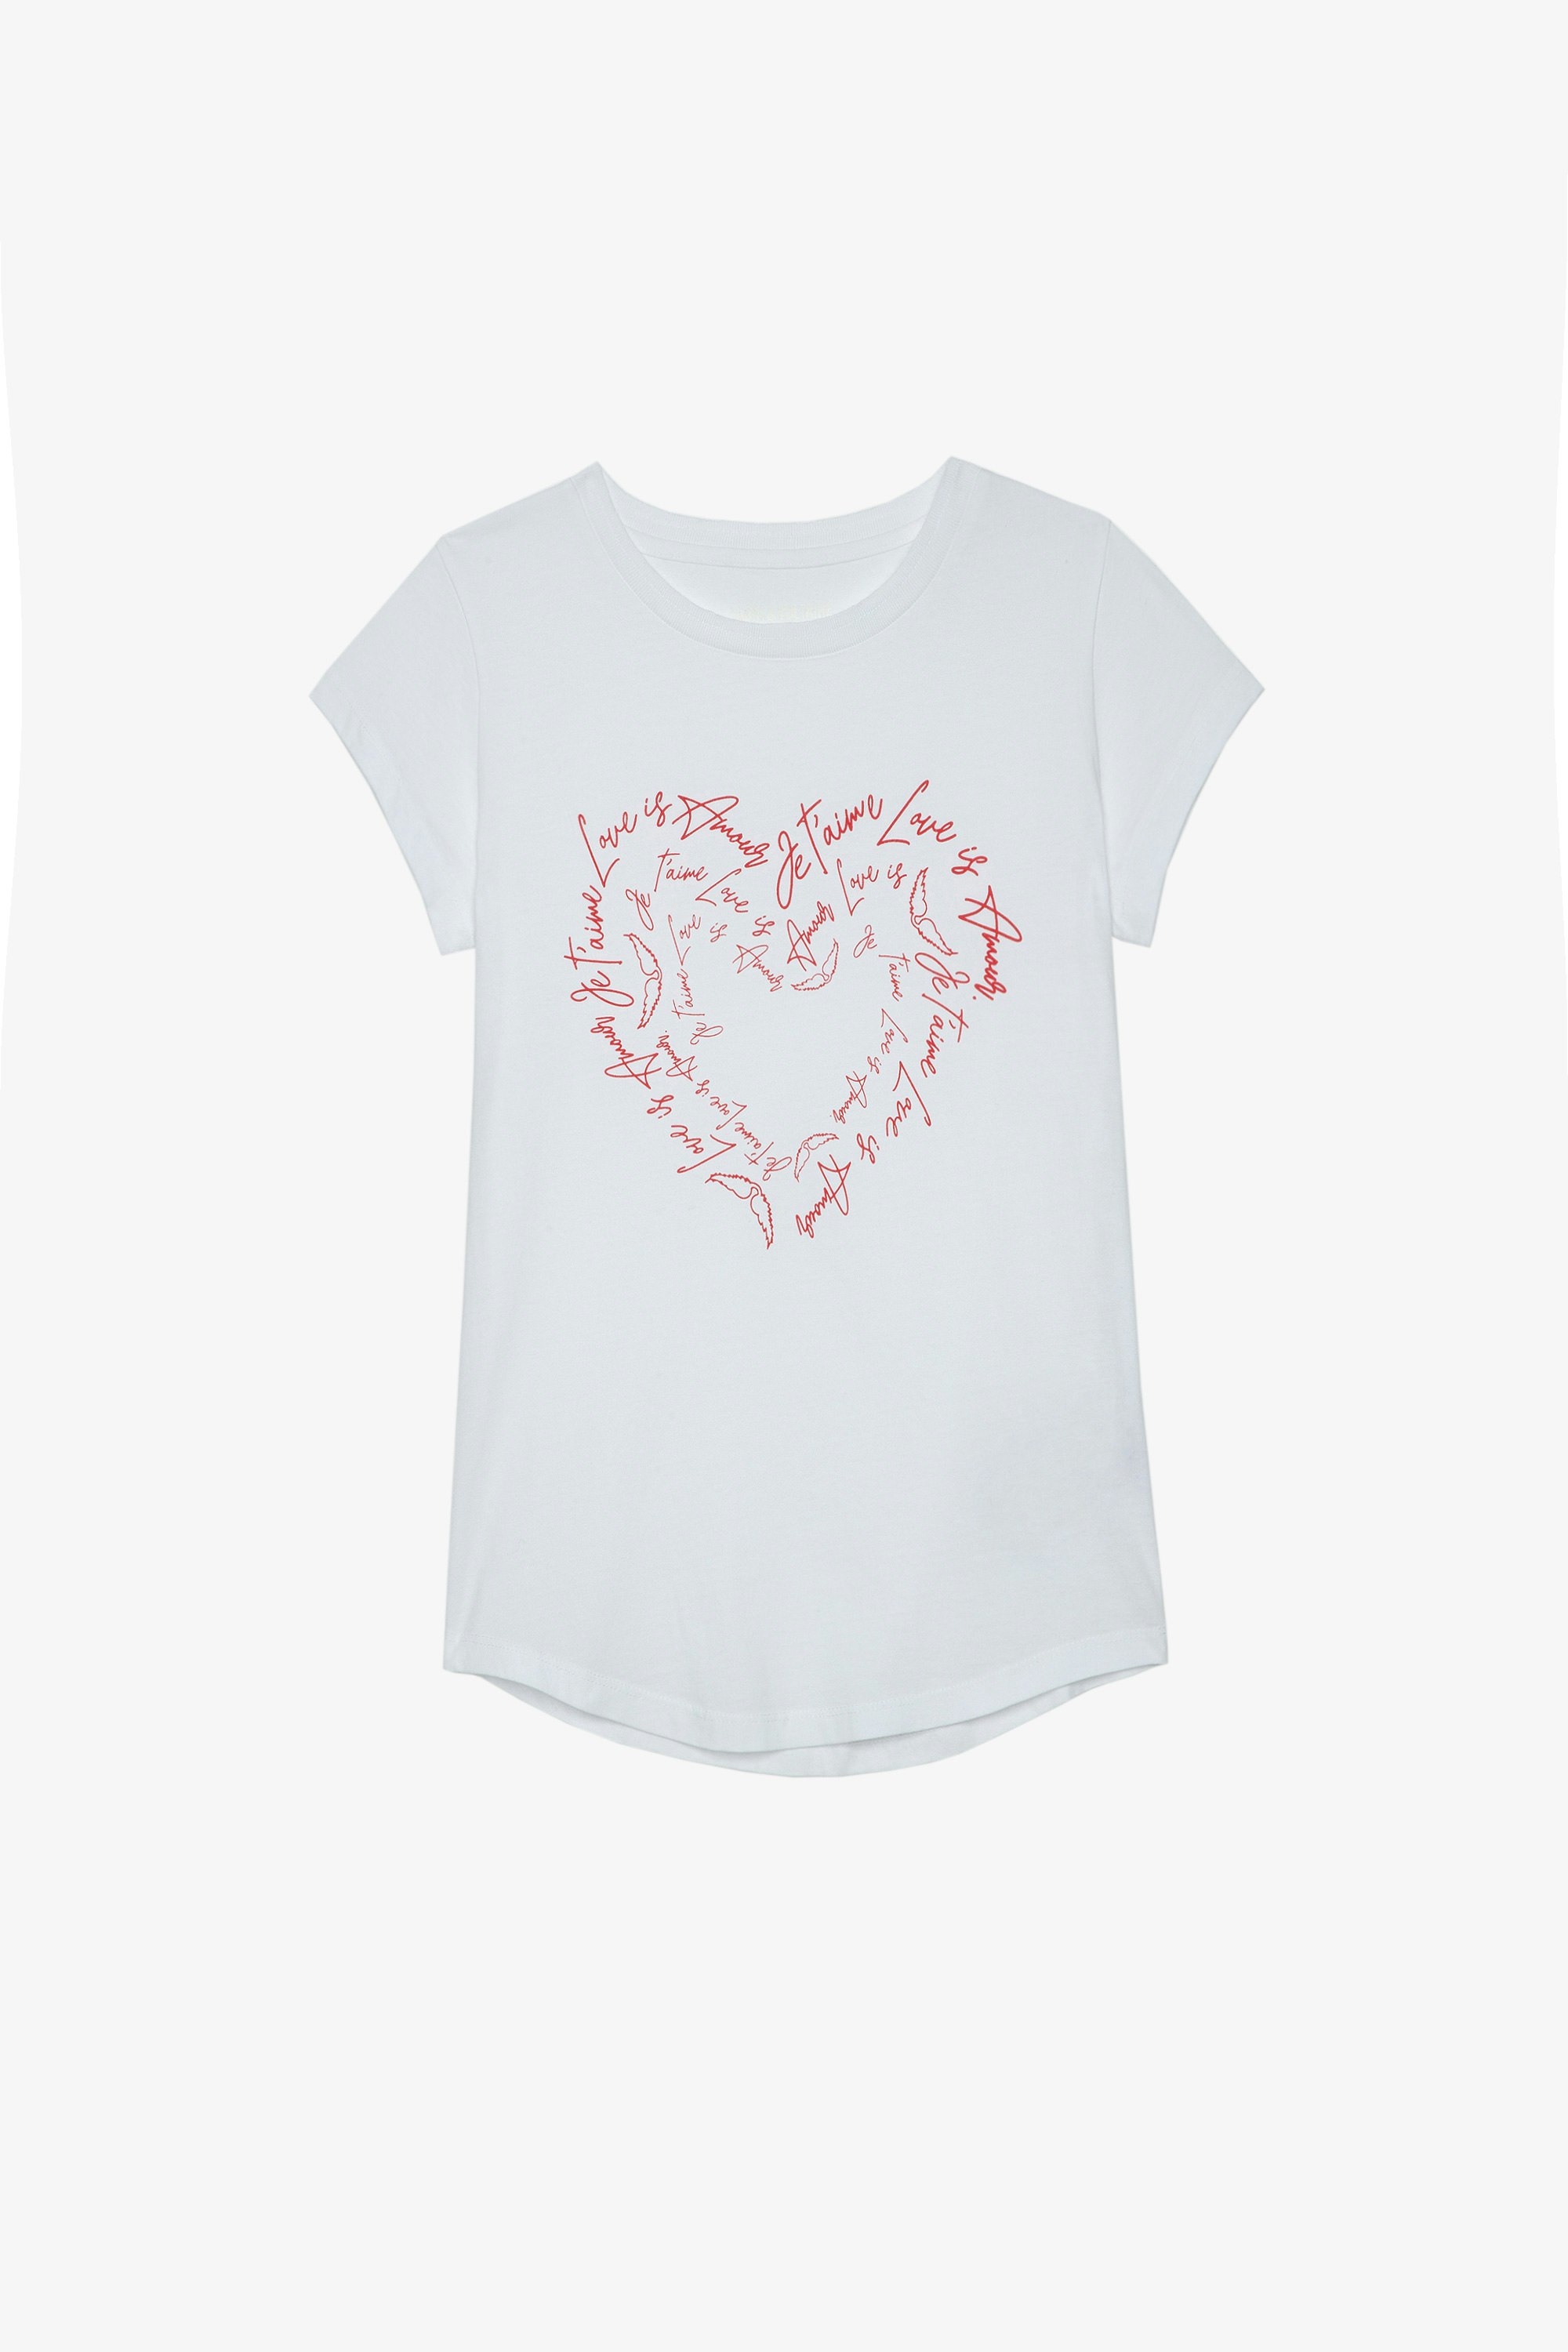 T-Shirt Skinny Heart Weißes Baumwoll-T-Shirt, mit herzförmigen Liebesbotschaften und Kristallen verziert